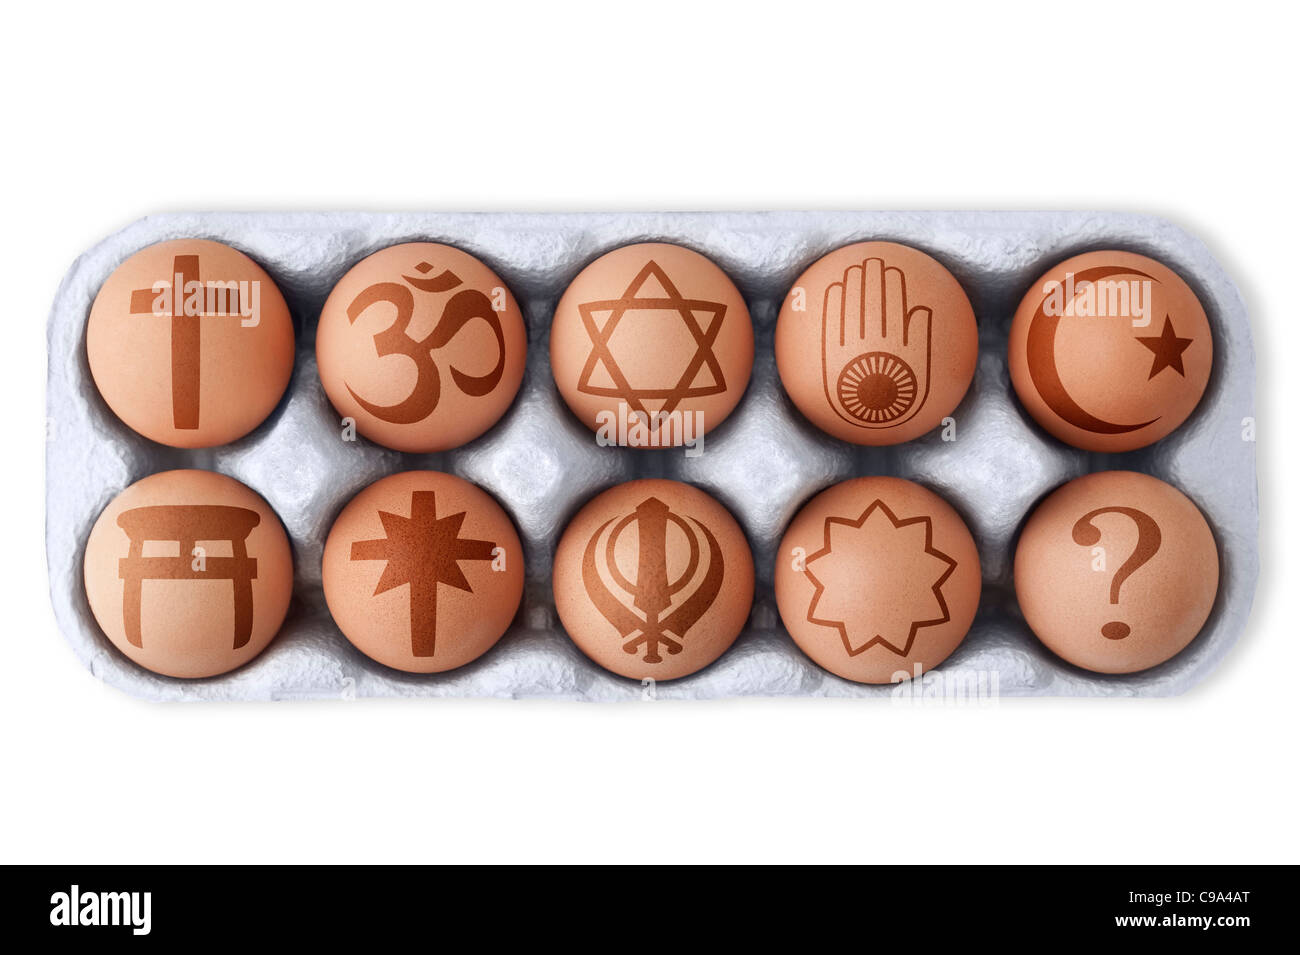 Huevos en caja con distintos símbolos de religiones mundiales impreso en nueve y uno con un signo de interrogación. Fondo blanco, cuarteado Foto de stock